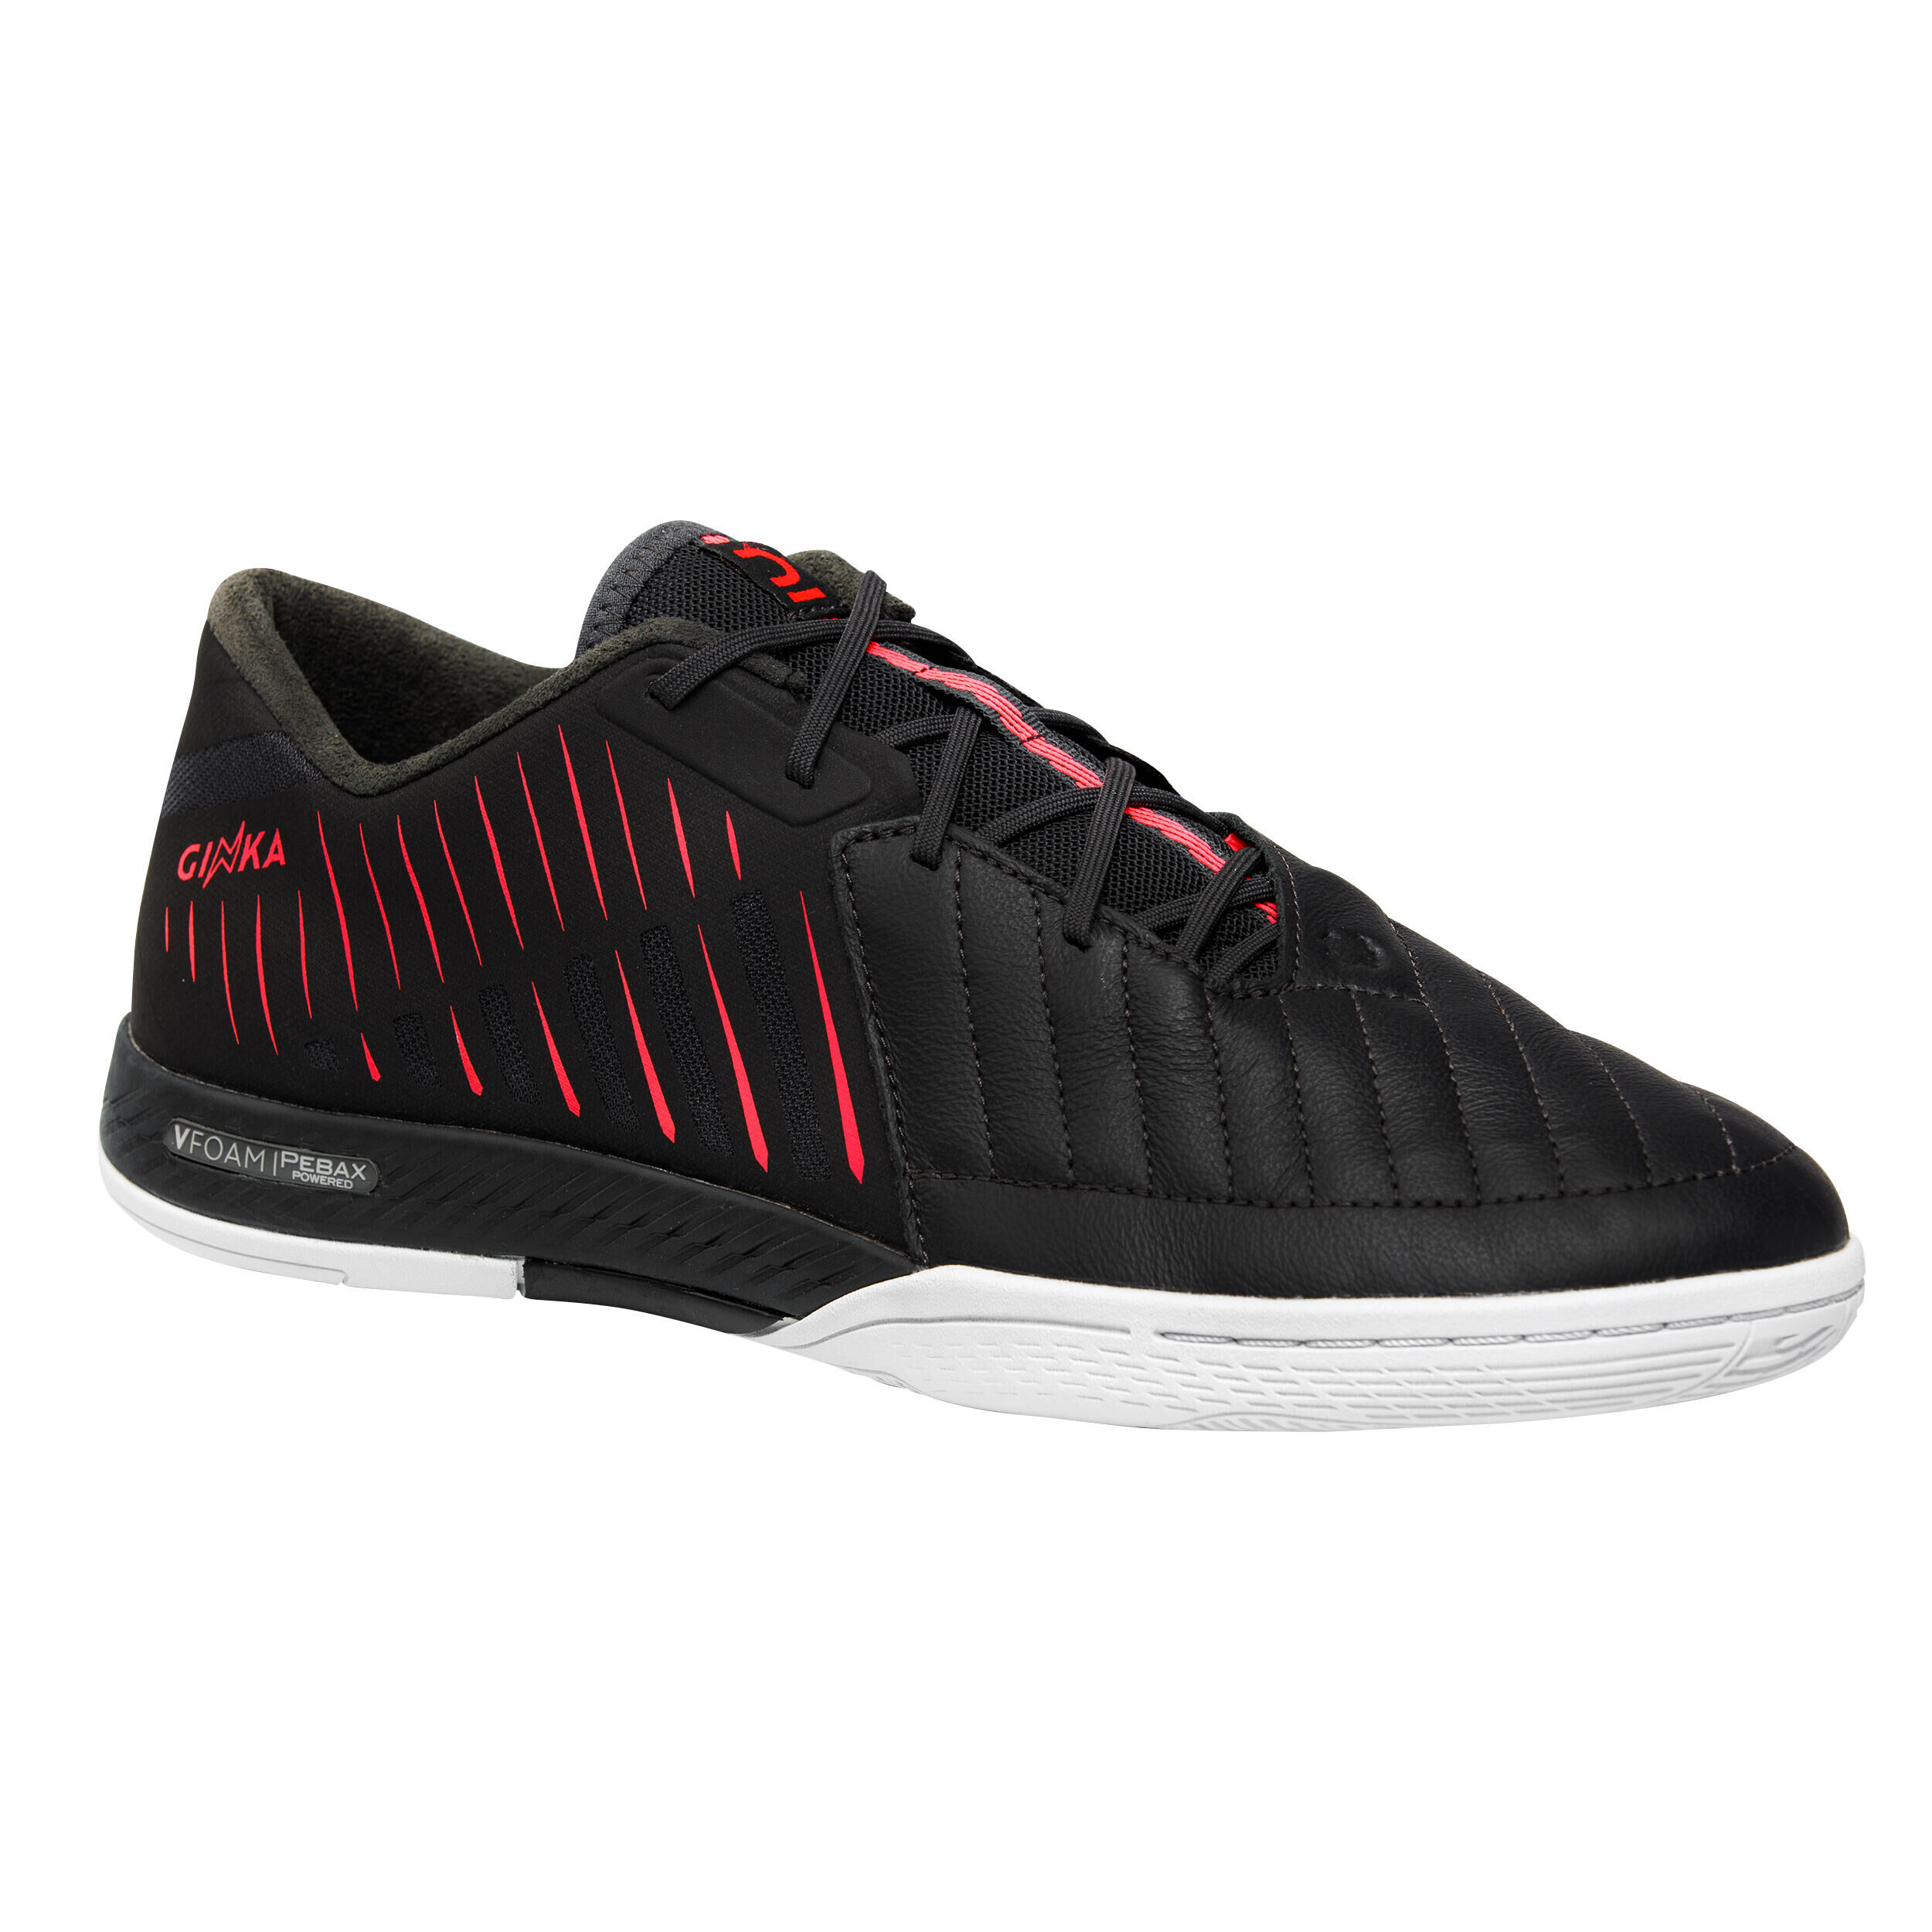 KIPSTA Futsal Shoes Ginka Pro - Black/Pink